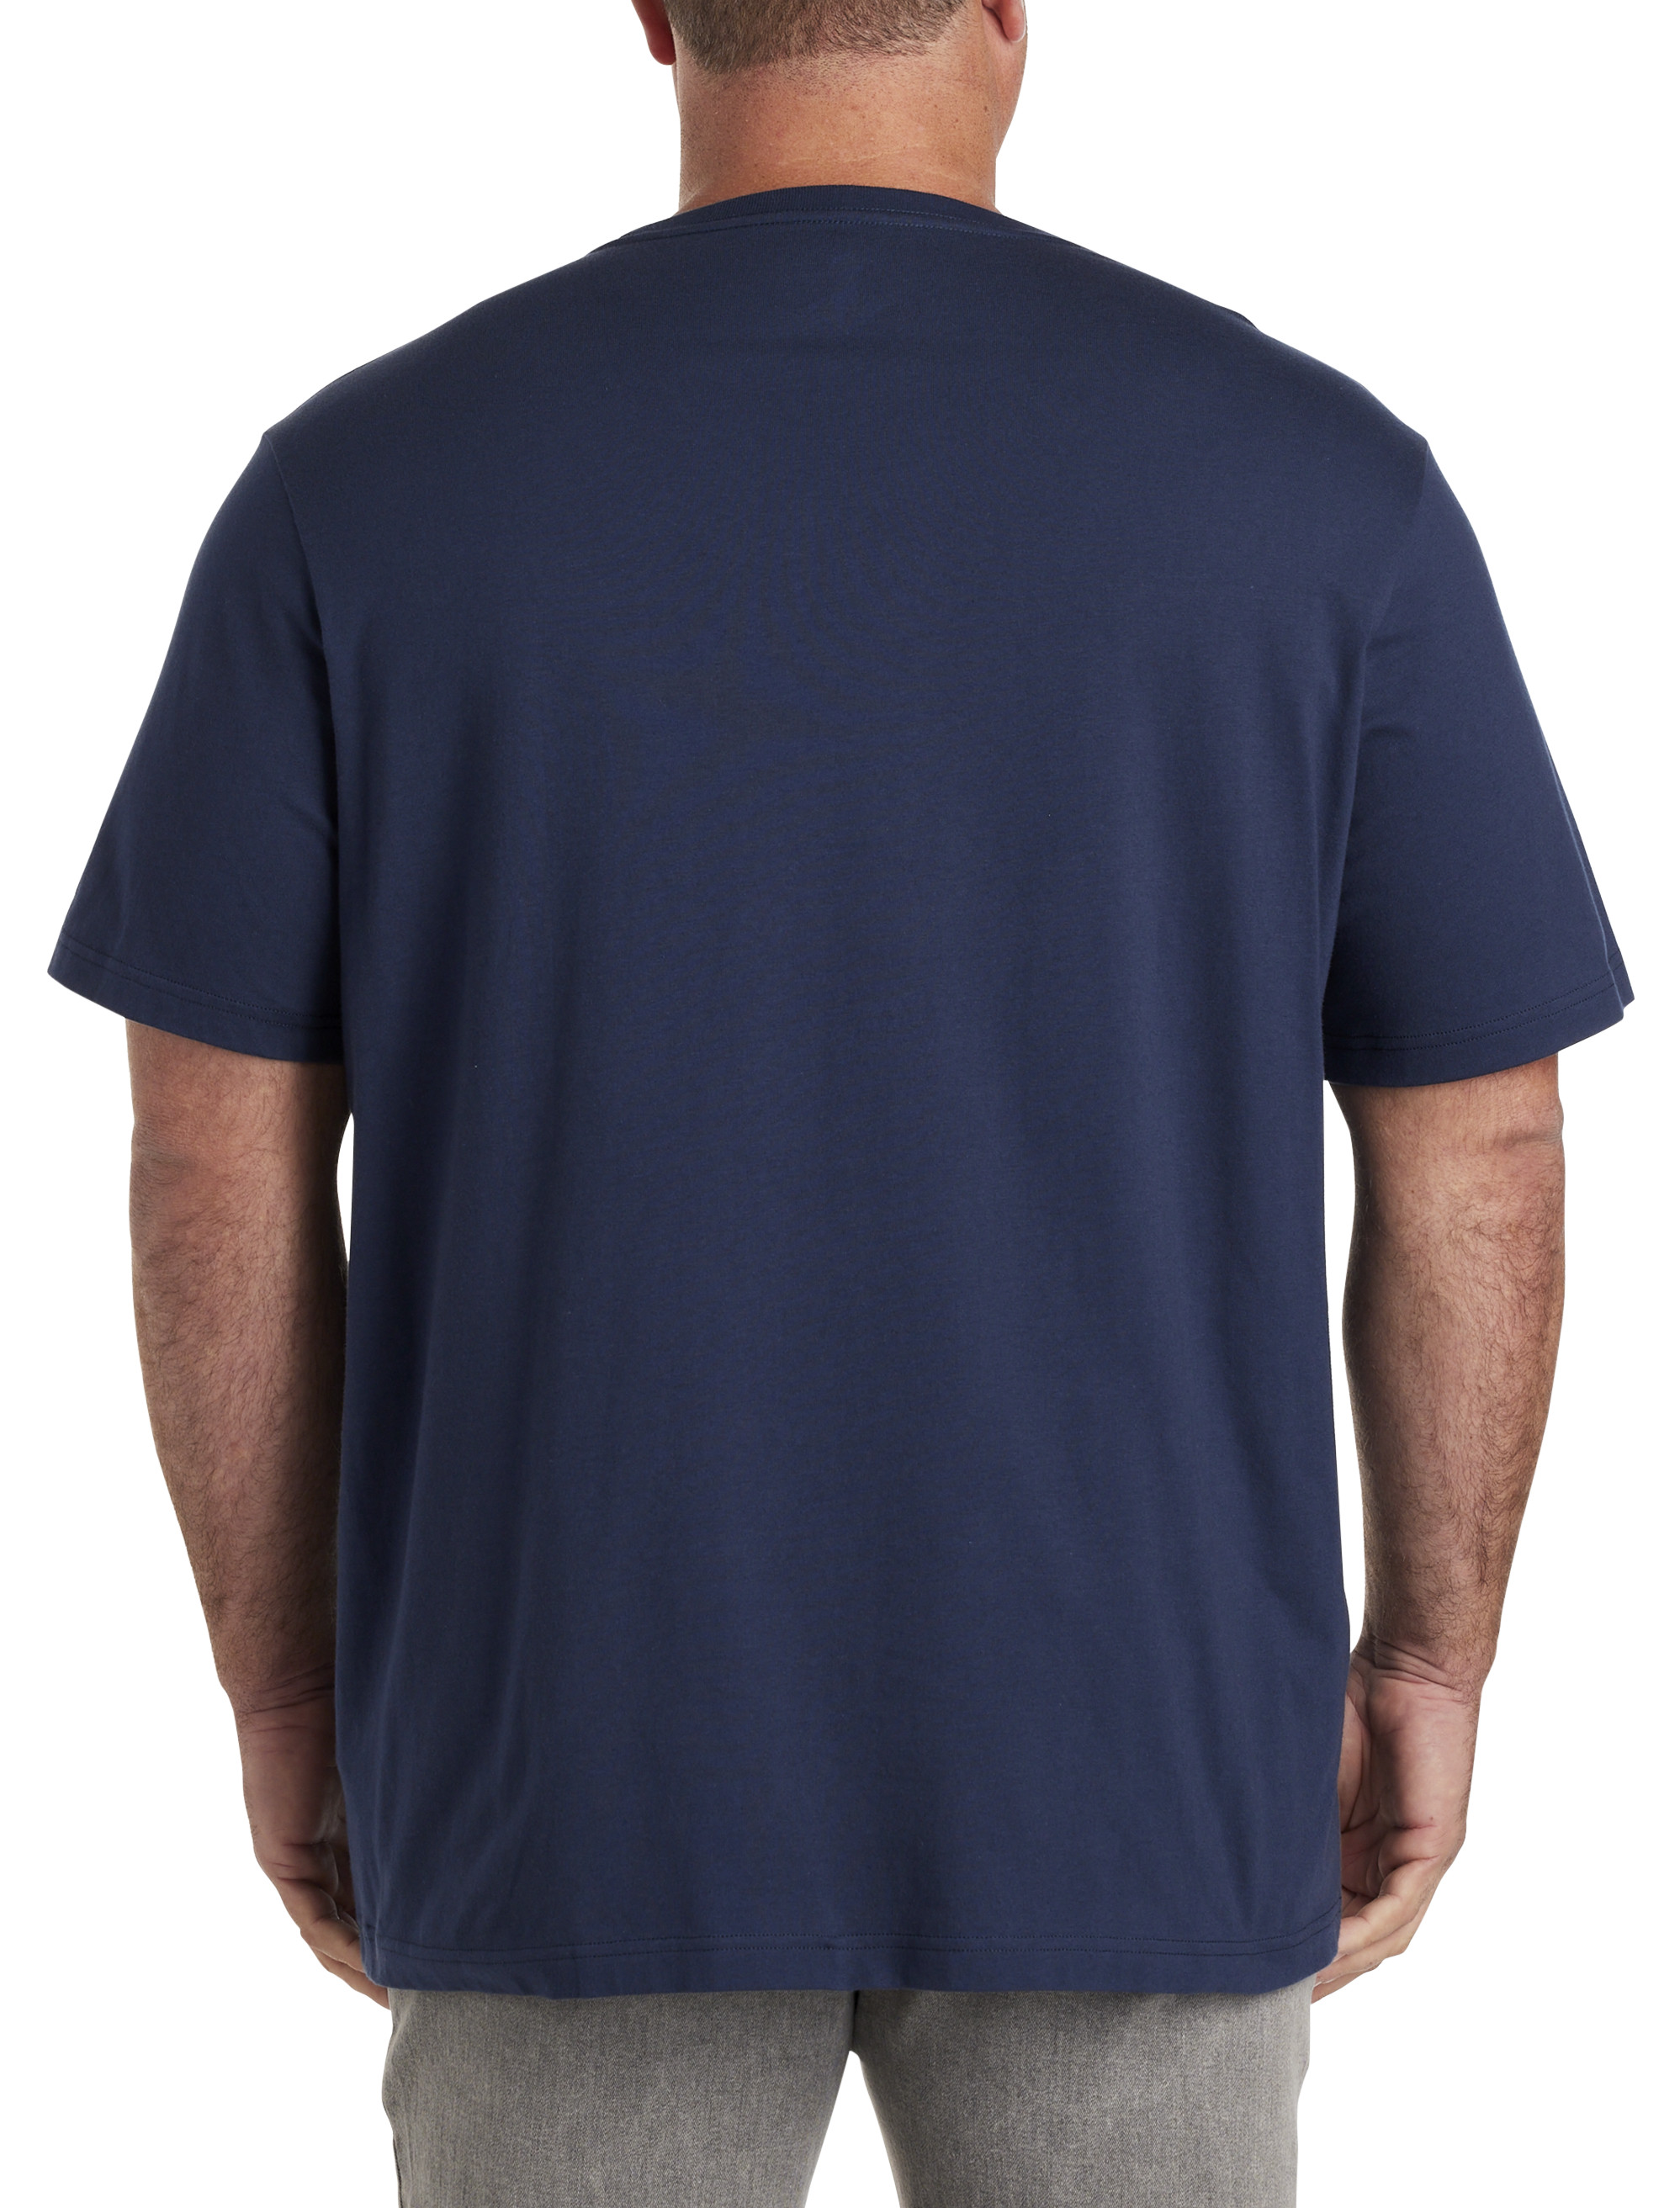 Pocket Crew Neck T-Shirts for Big Men 3XL-8XL